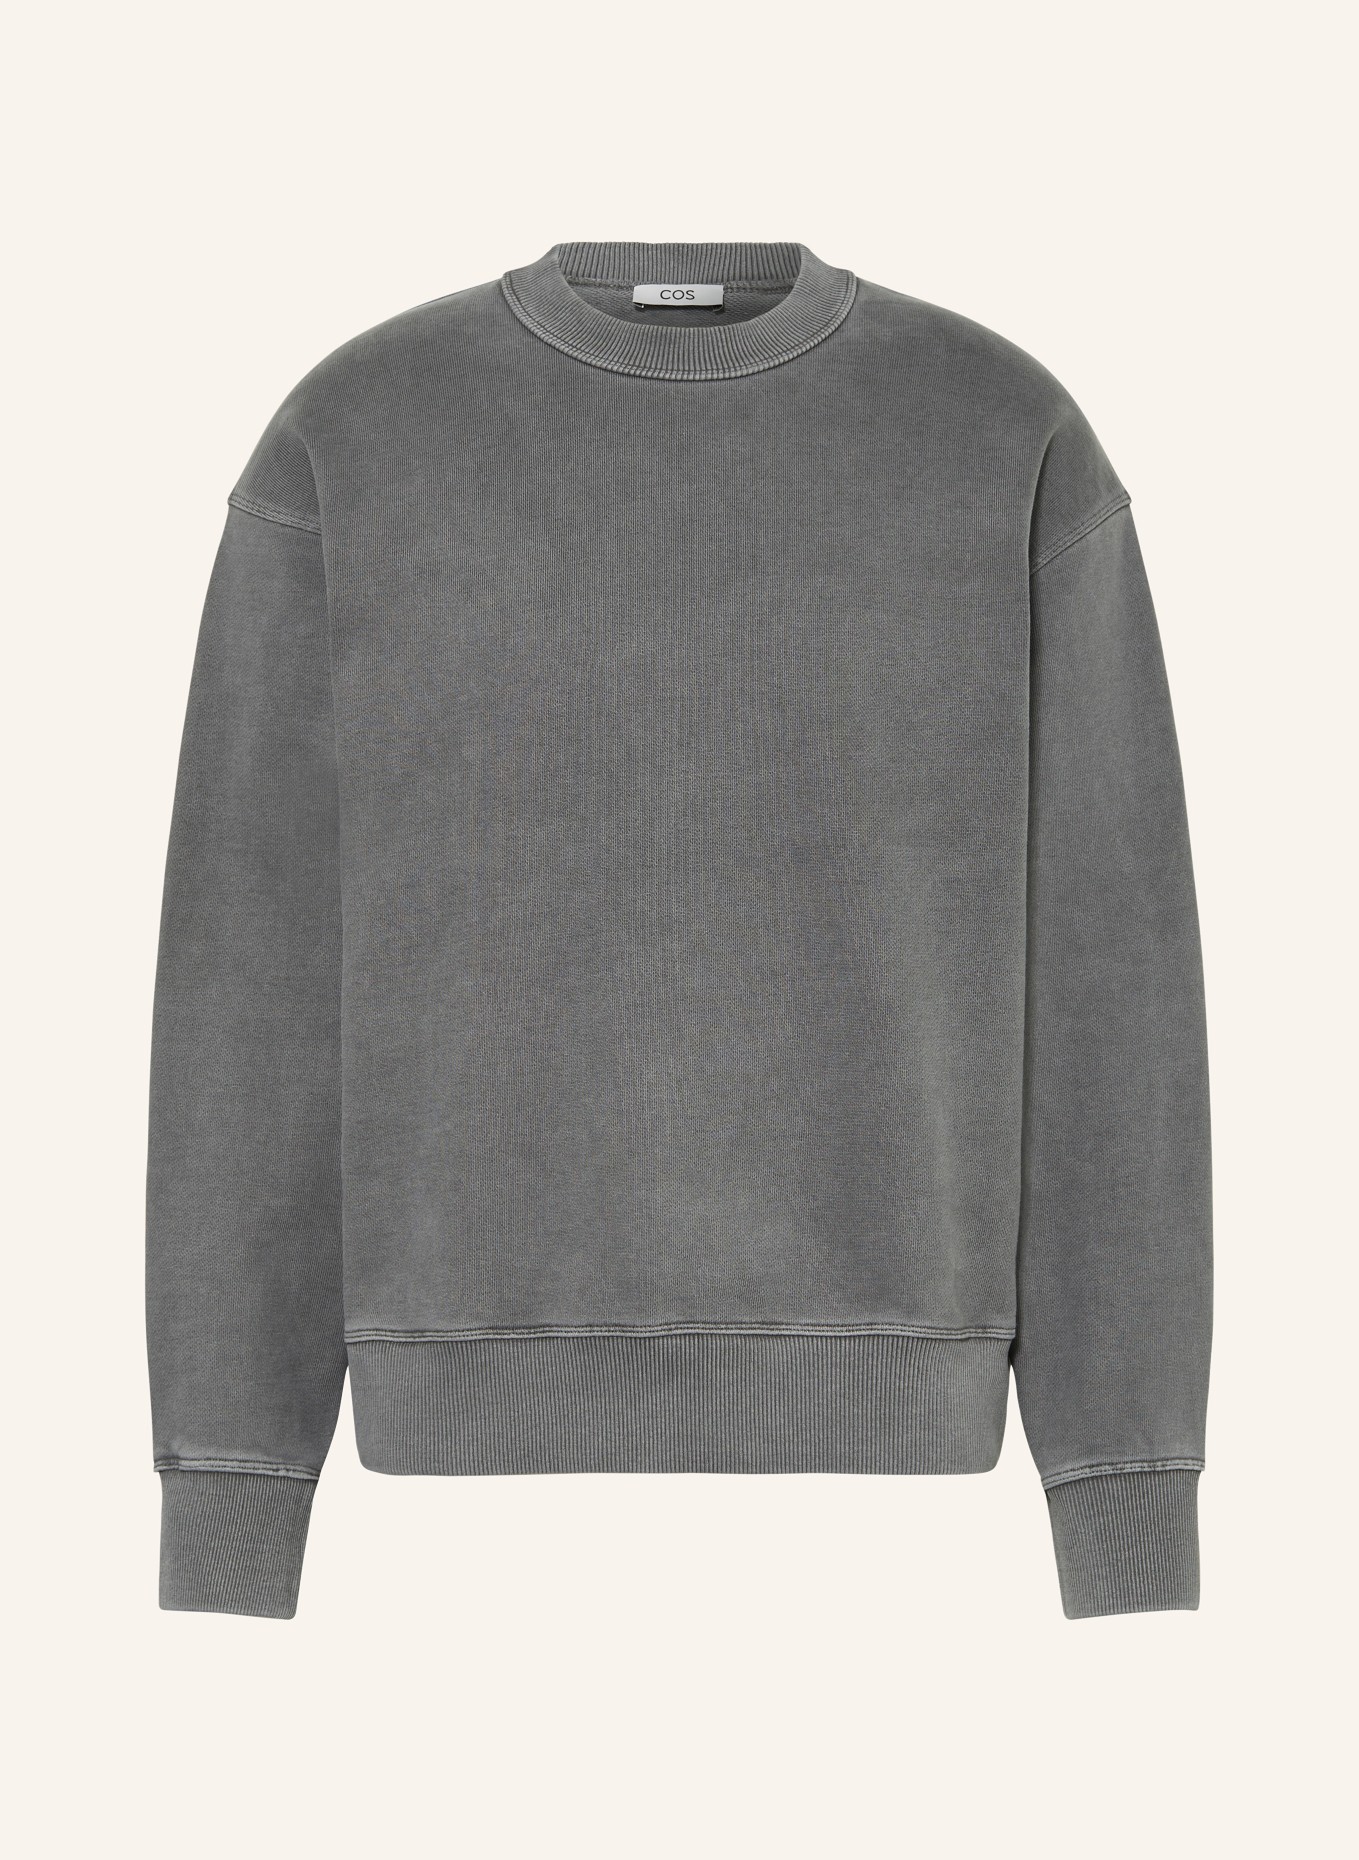 COS Sweatshirt, Color: GRAY (Image 1)